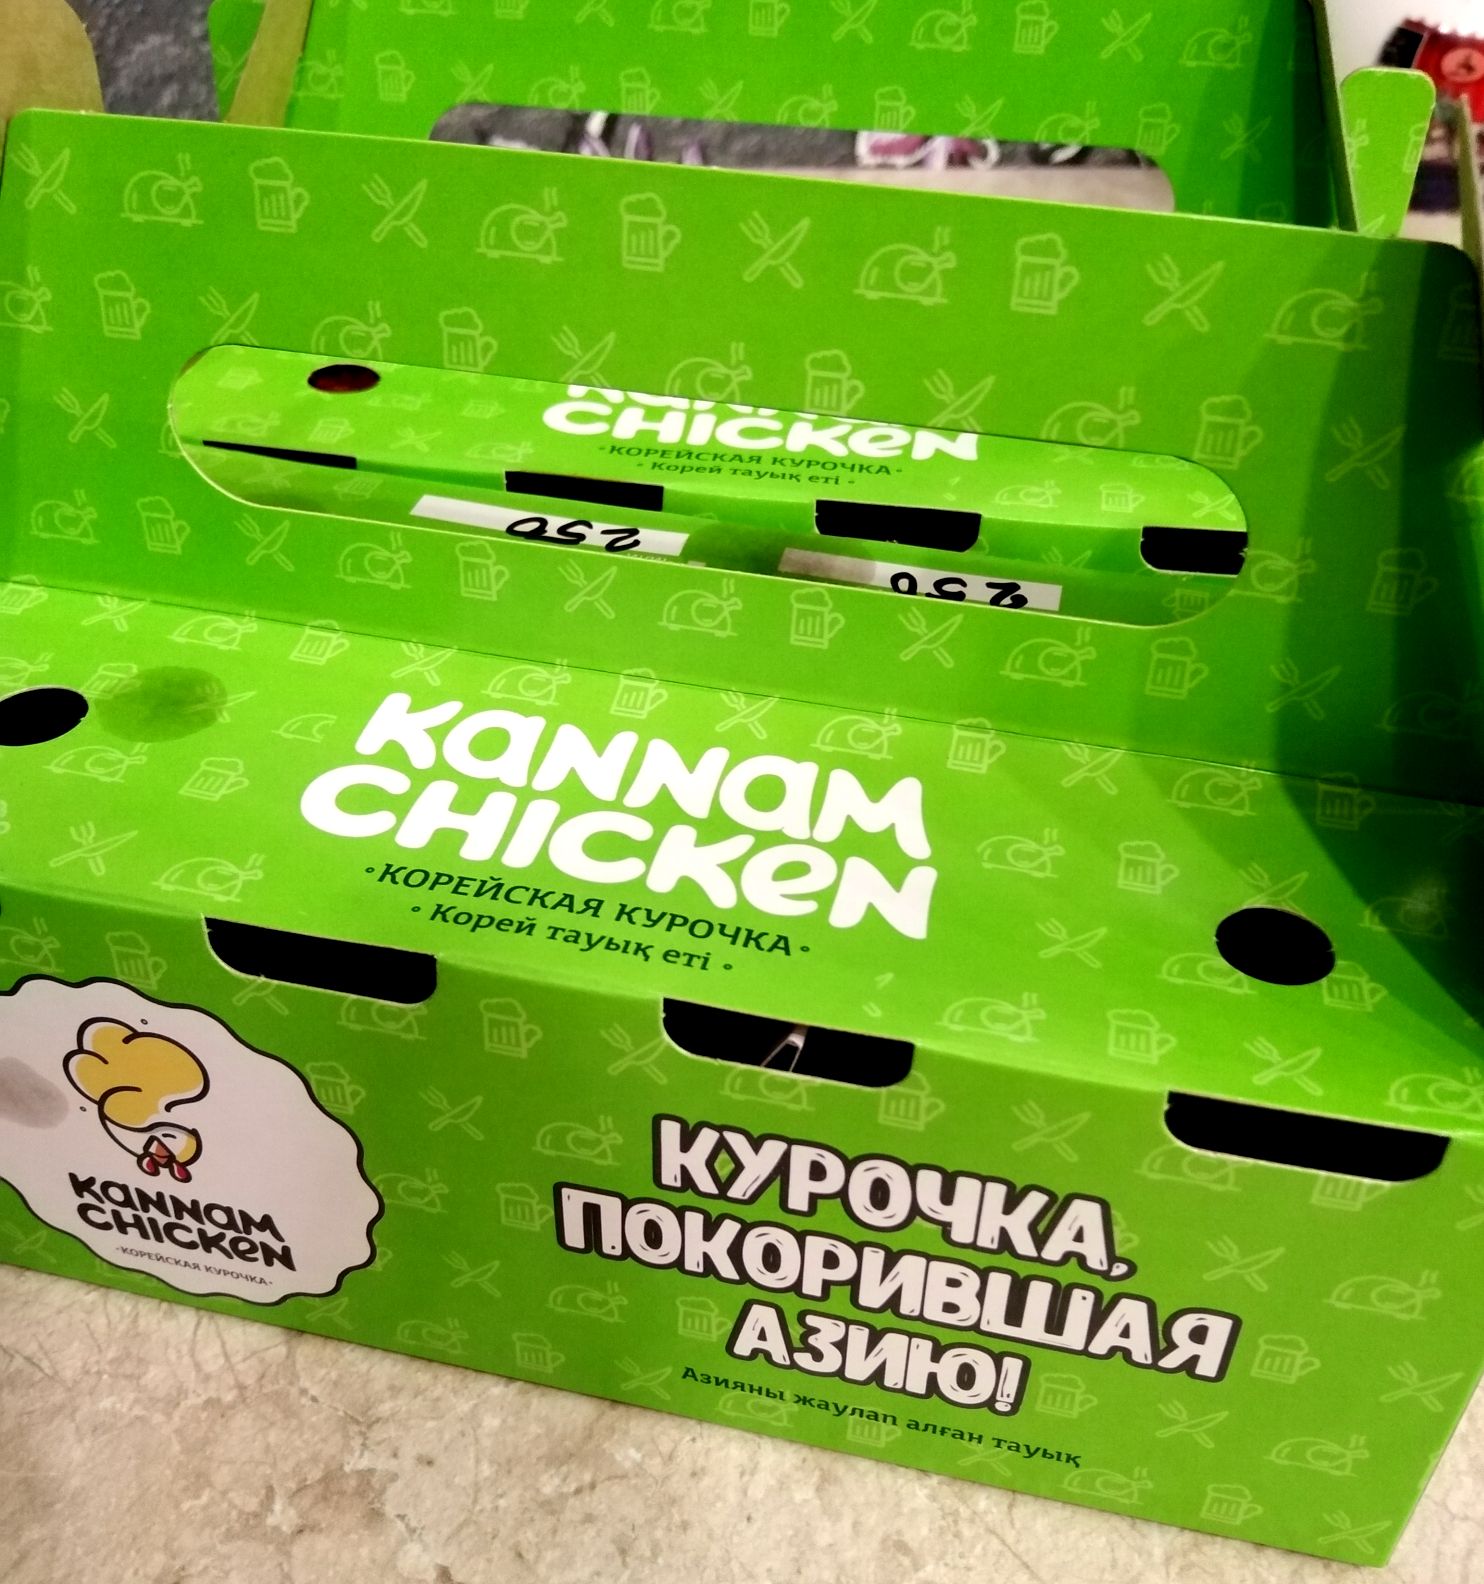 Kannam Chicken Улан-Удэ. Kannam Chicken Стерлитамак отзывы.